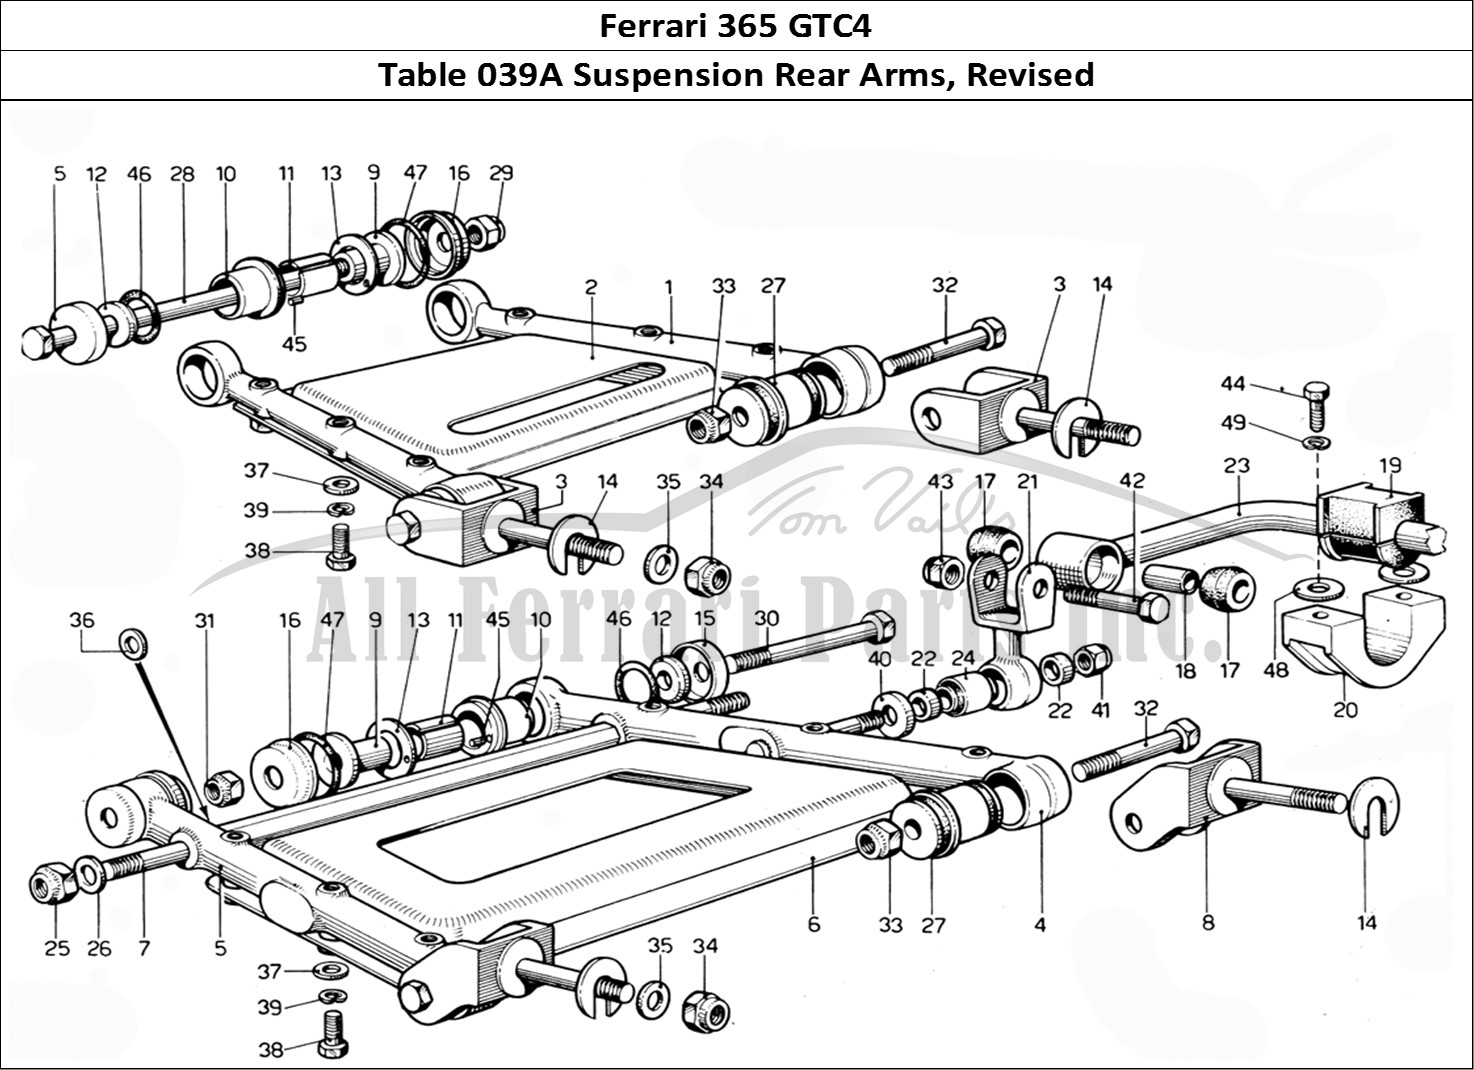 Ferrari Parts Ferrari 365 GTC4 (Mechanical) Page 039 Rear suspension arms - Re